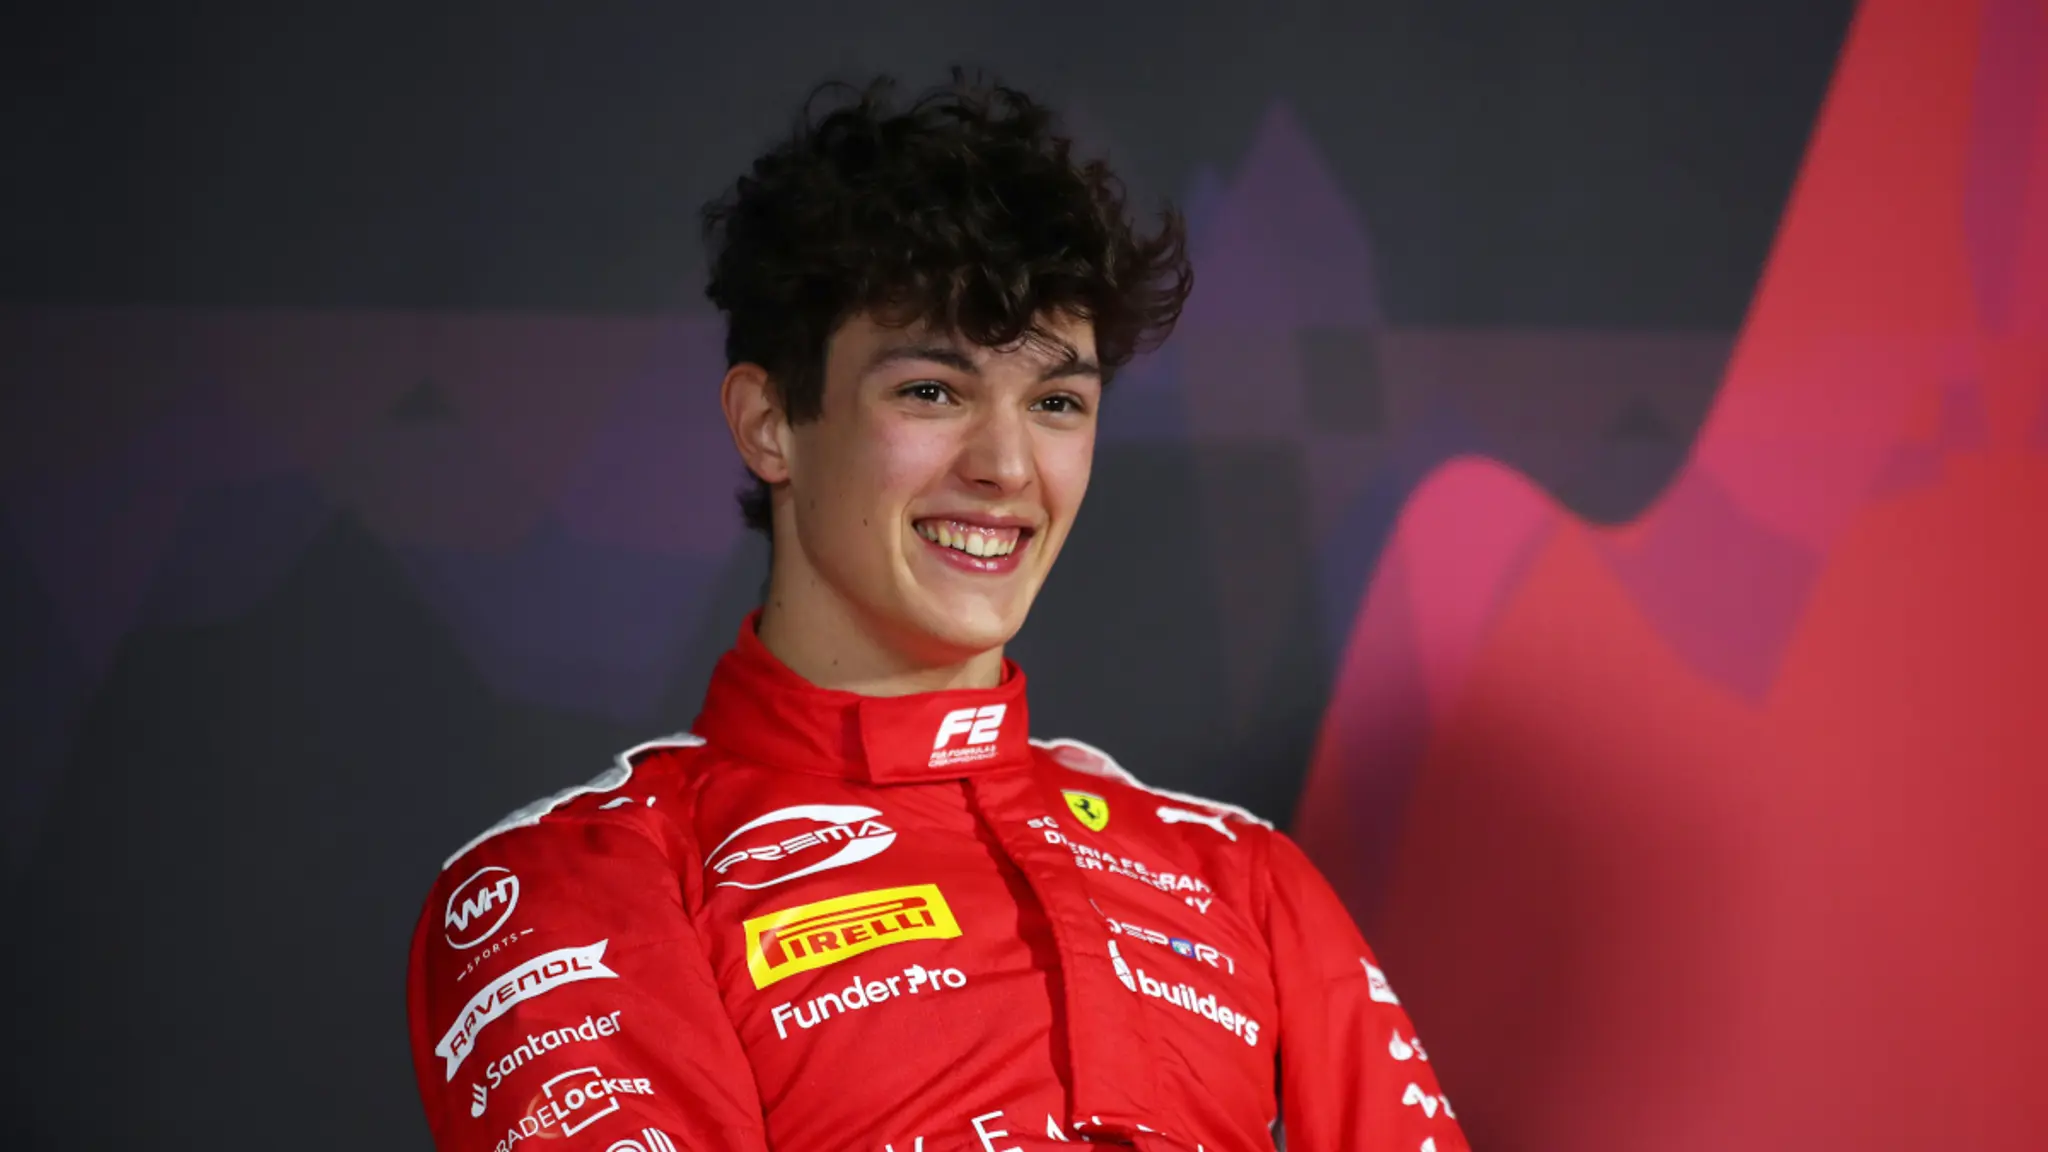 Te apresento o Oliver Bearman: o jovem talentoso que assume o volante da Ferrari em substituição a Carlos Sainz